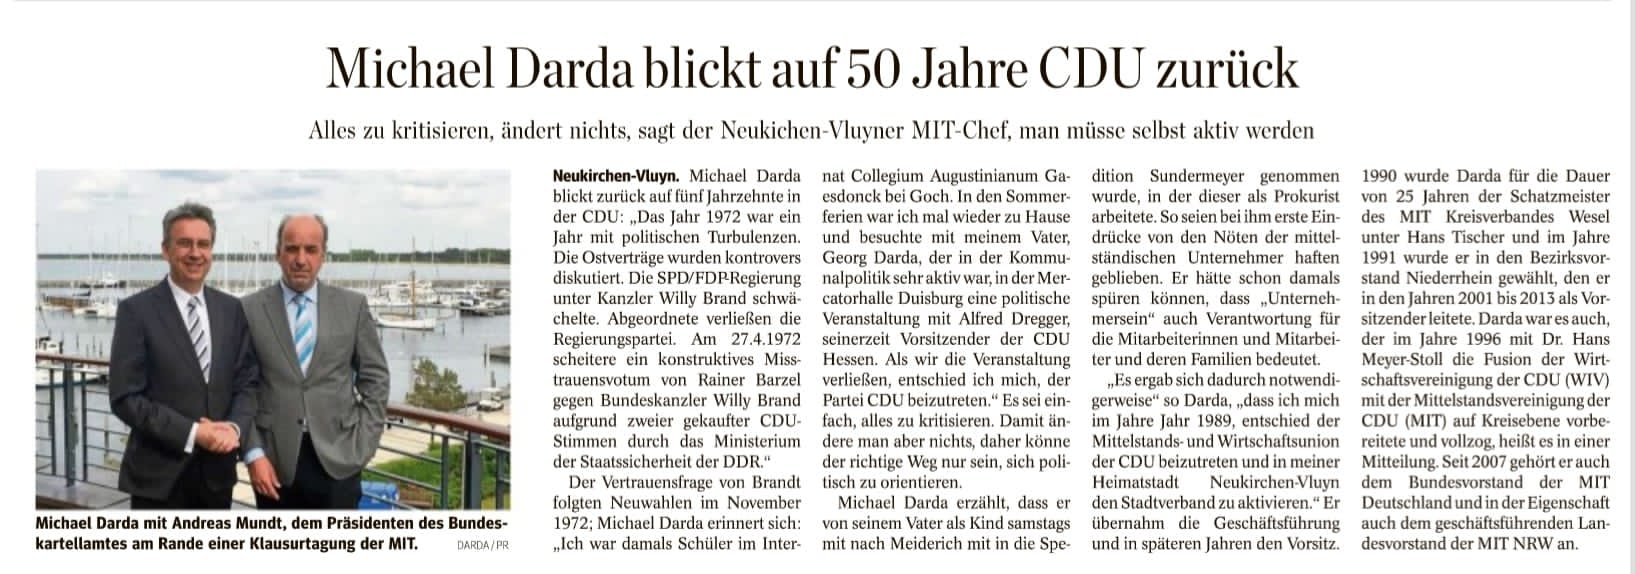 Über ein halbes Jahrhundert Mitglied der CDU: Michael Darda, MIT-Bundesvorstandsmitglied, trat zum 1.7.1972 der Partei bei